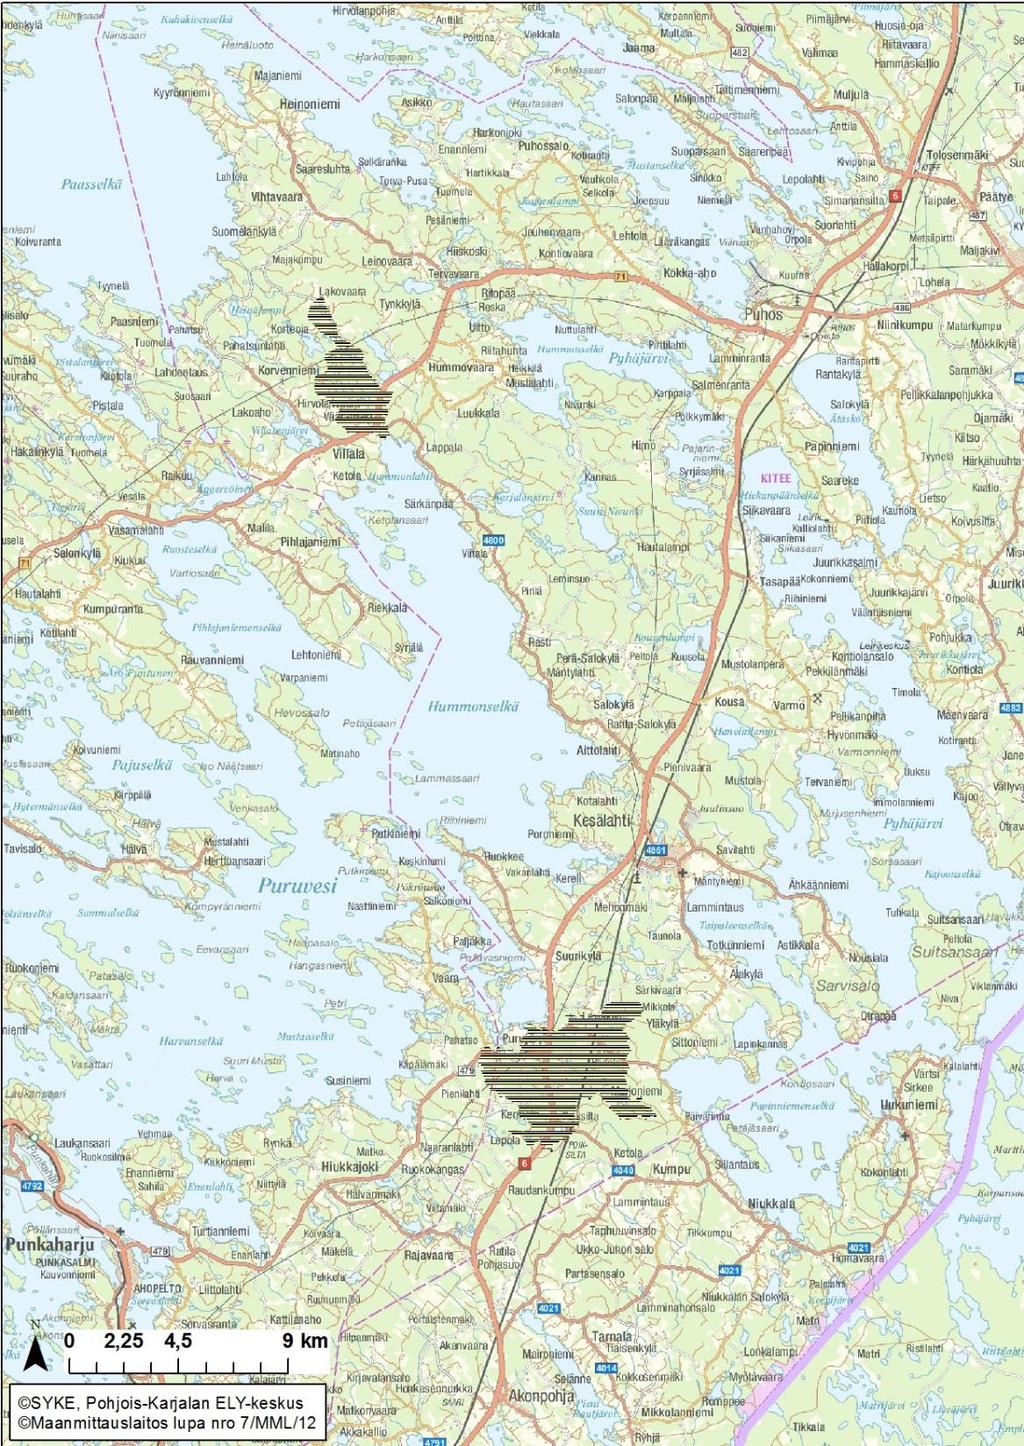 Pohjois-Karjalan ELY-keskus on kartassa esitetyillä alueilla mukana valuma-aluekunnostusten toteutuksessa Samoilla alueilla toimii myös Suomen Metsäkeskus ELY-keskus ja